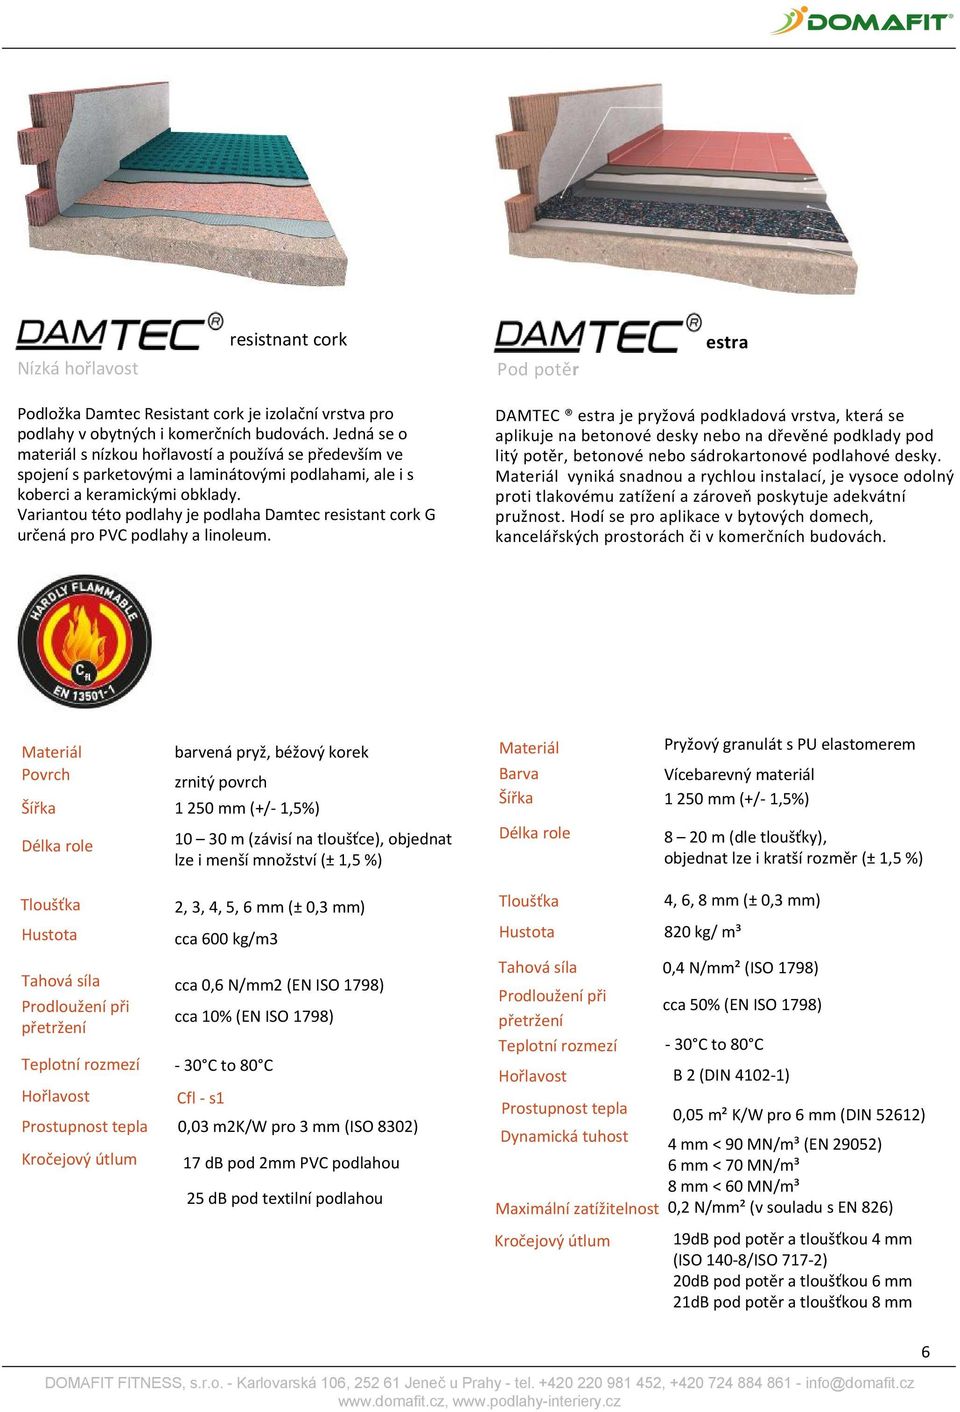 Variantou této podlahy je podlaha Damtec resistant cork G určená pro PVC podlahy a linoleum.